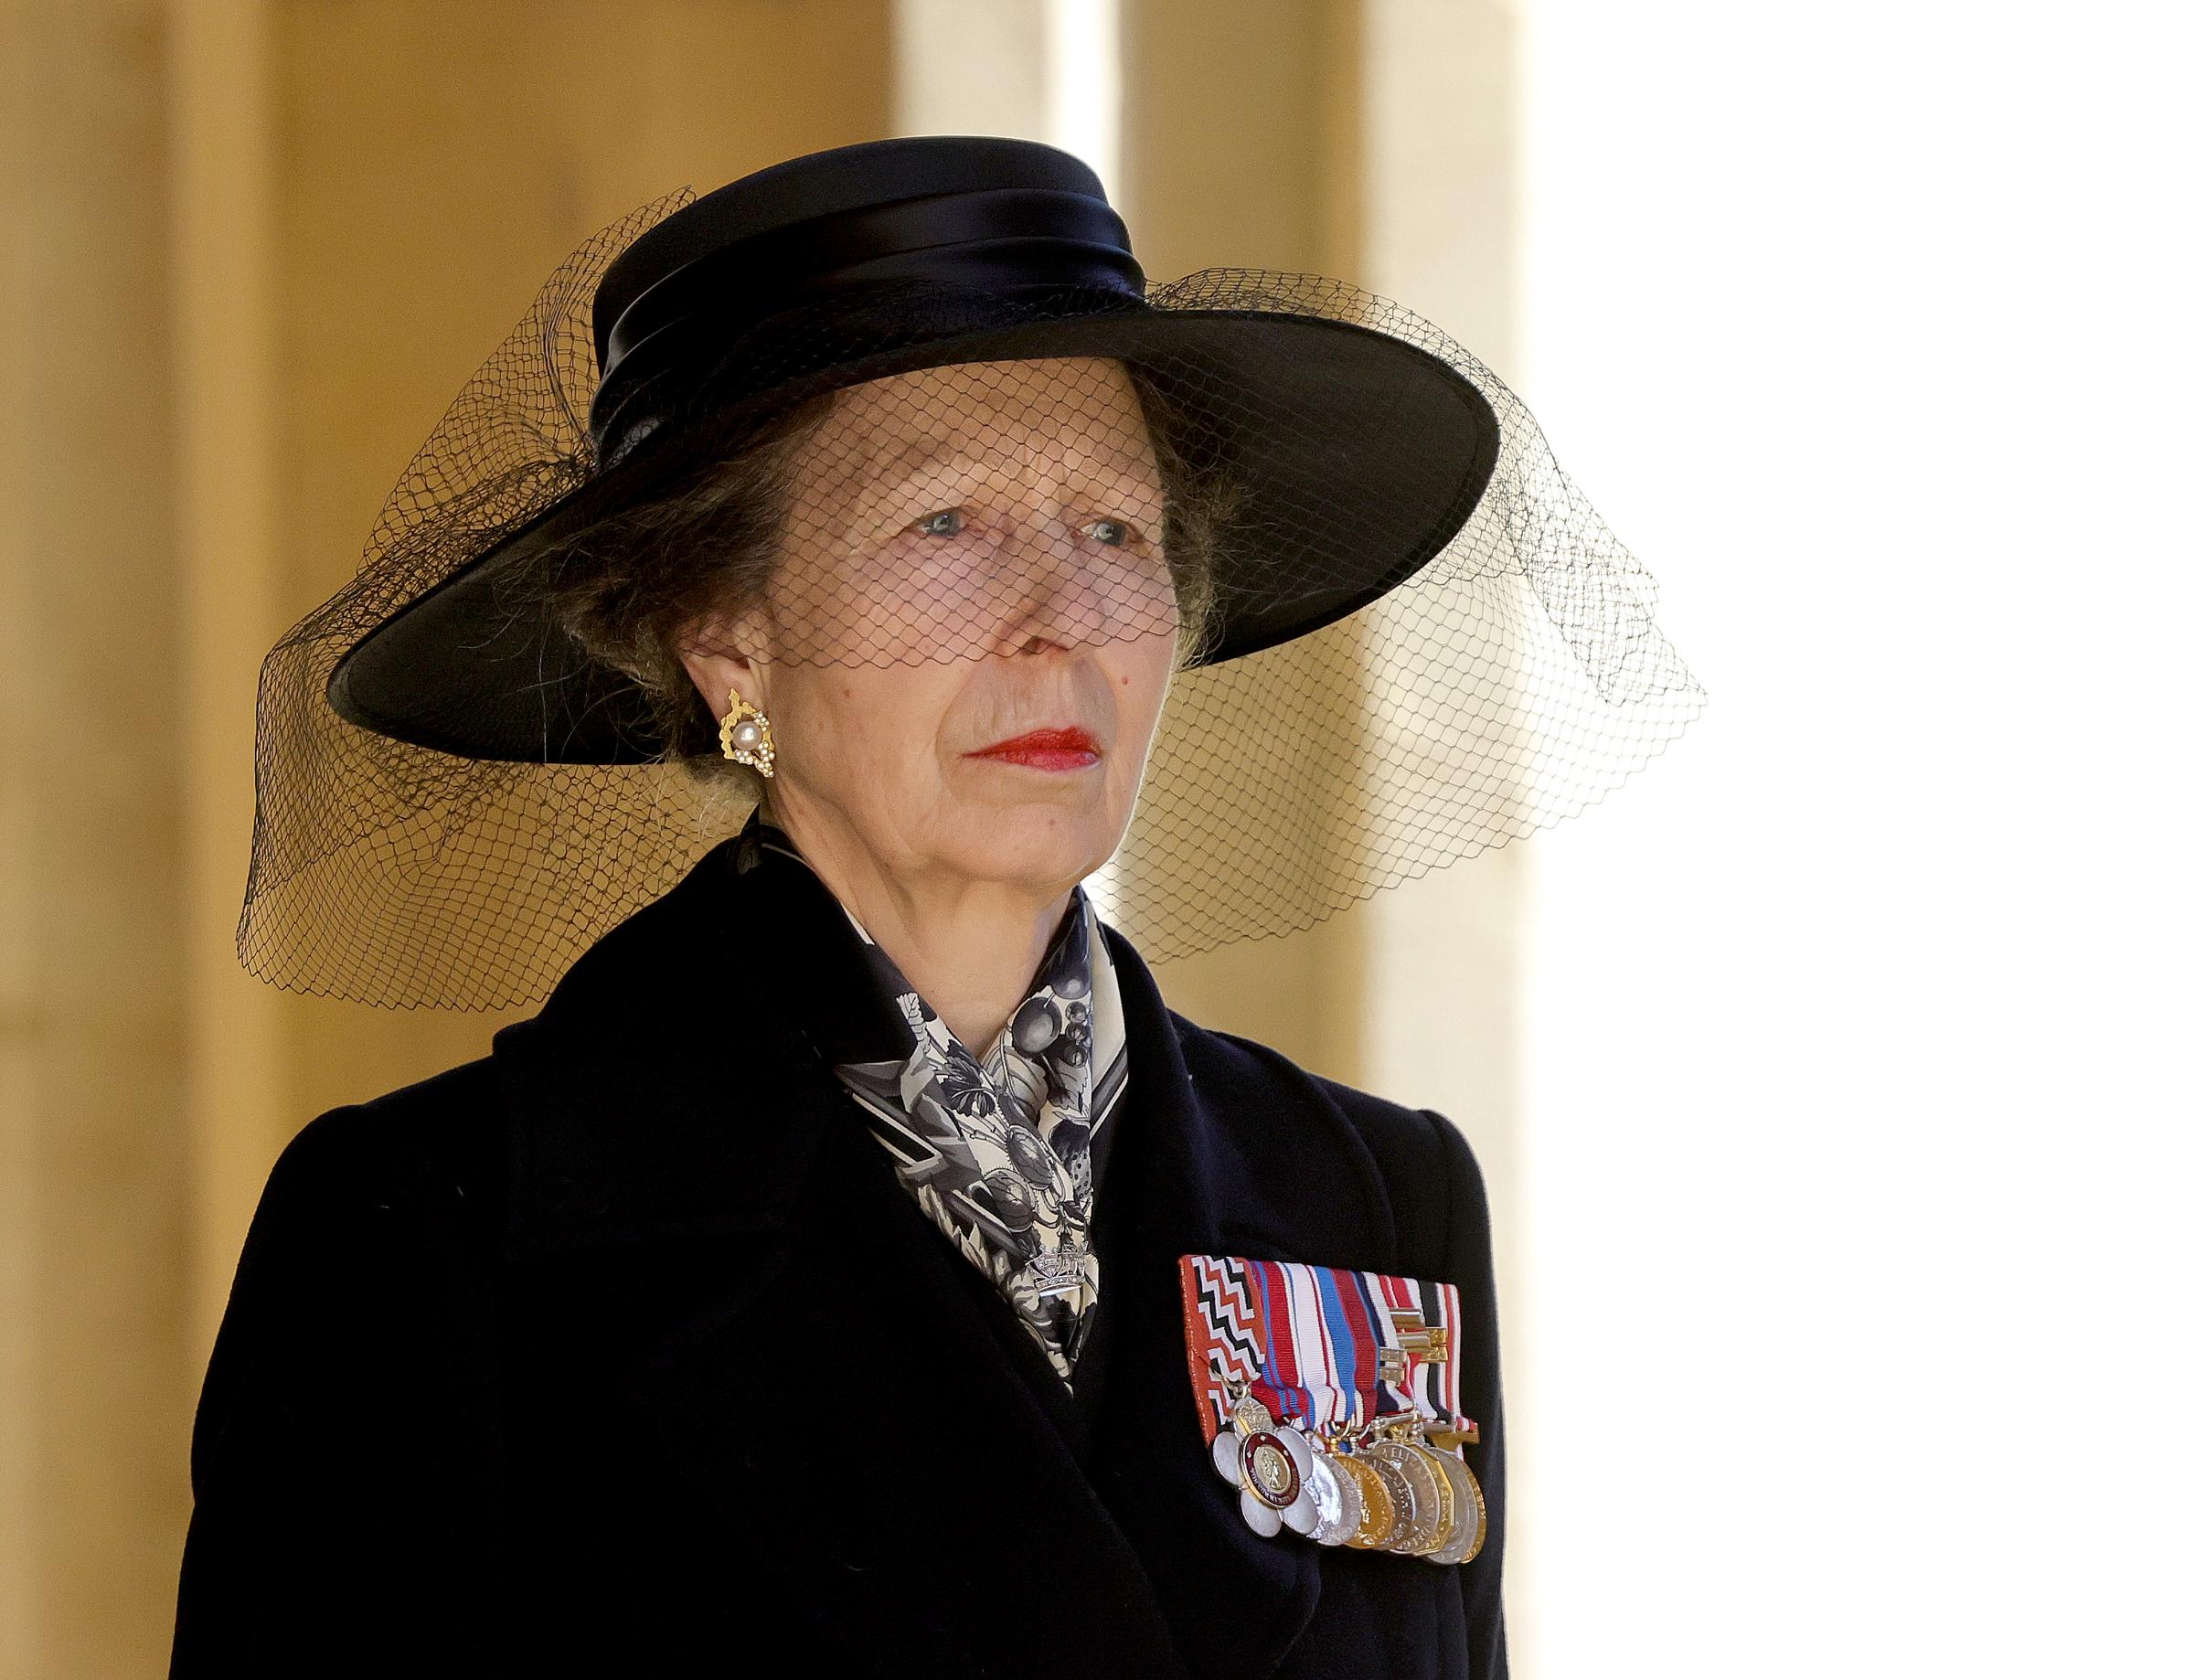 La princesse Anne lors des funérailles du prince Philip, duc d'Édimbourg, au château de Windsor, le 17 avril 2021 | Source : Getty Images